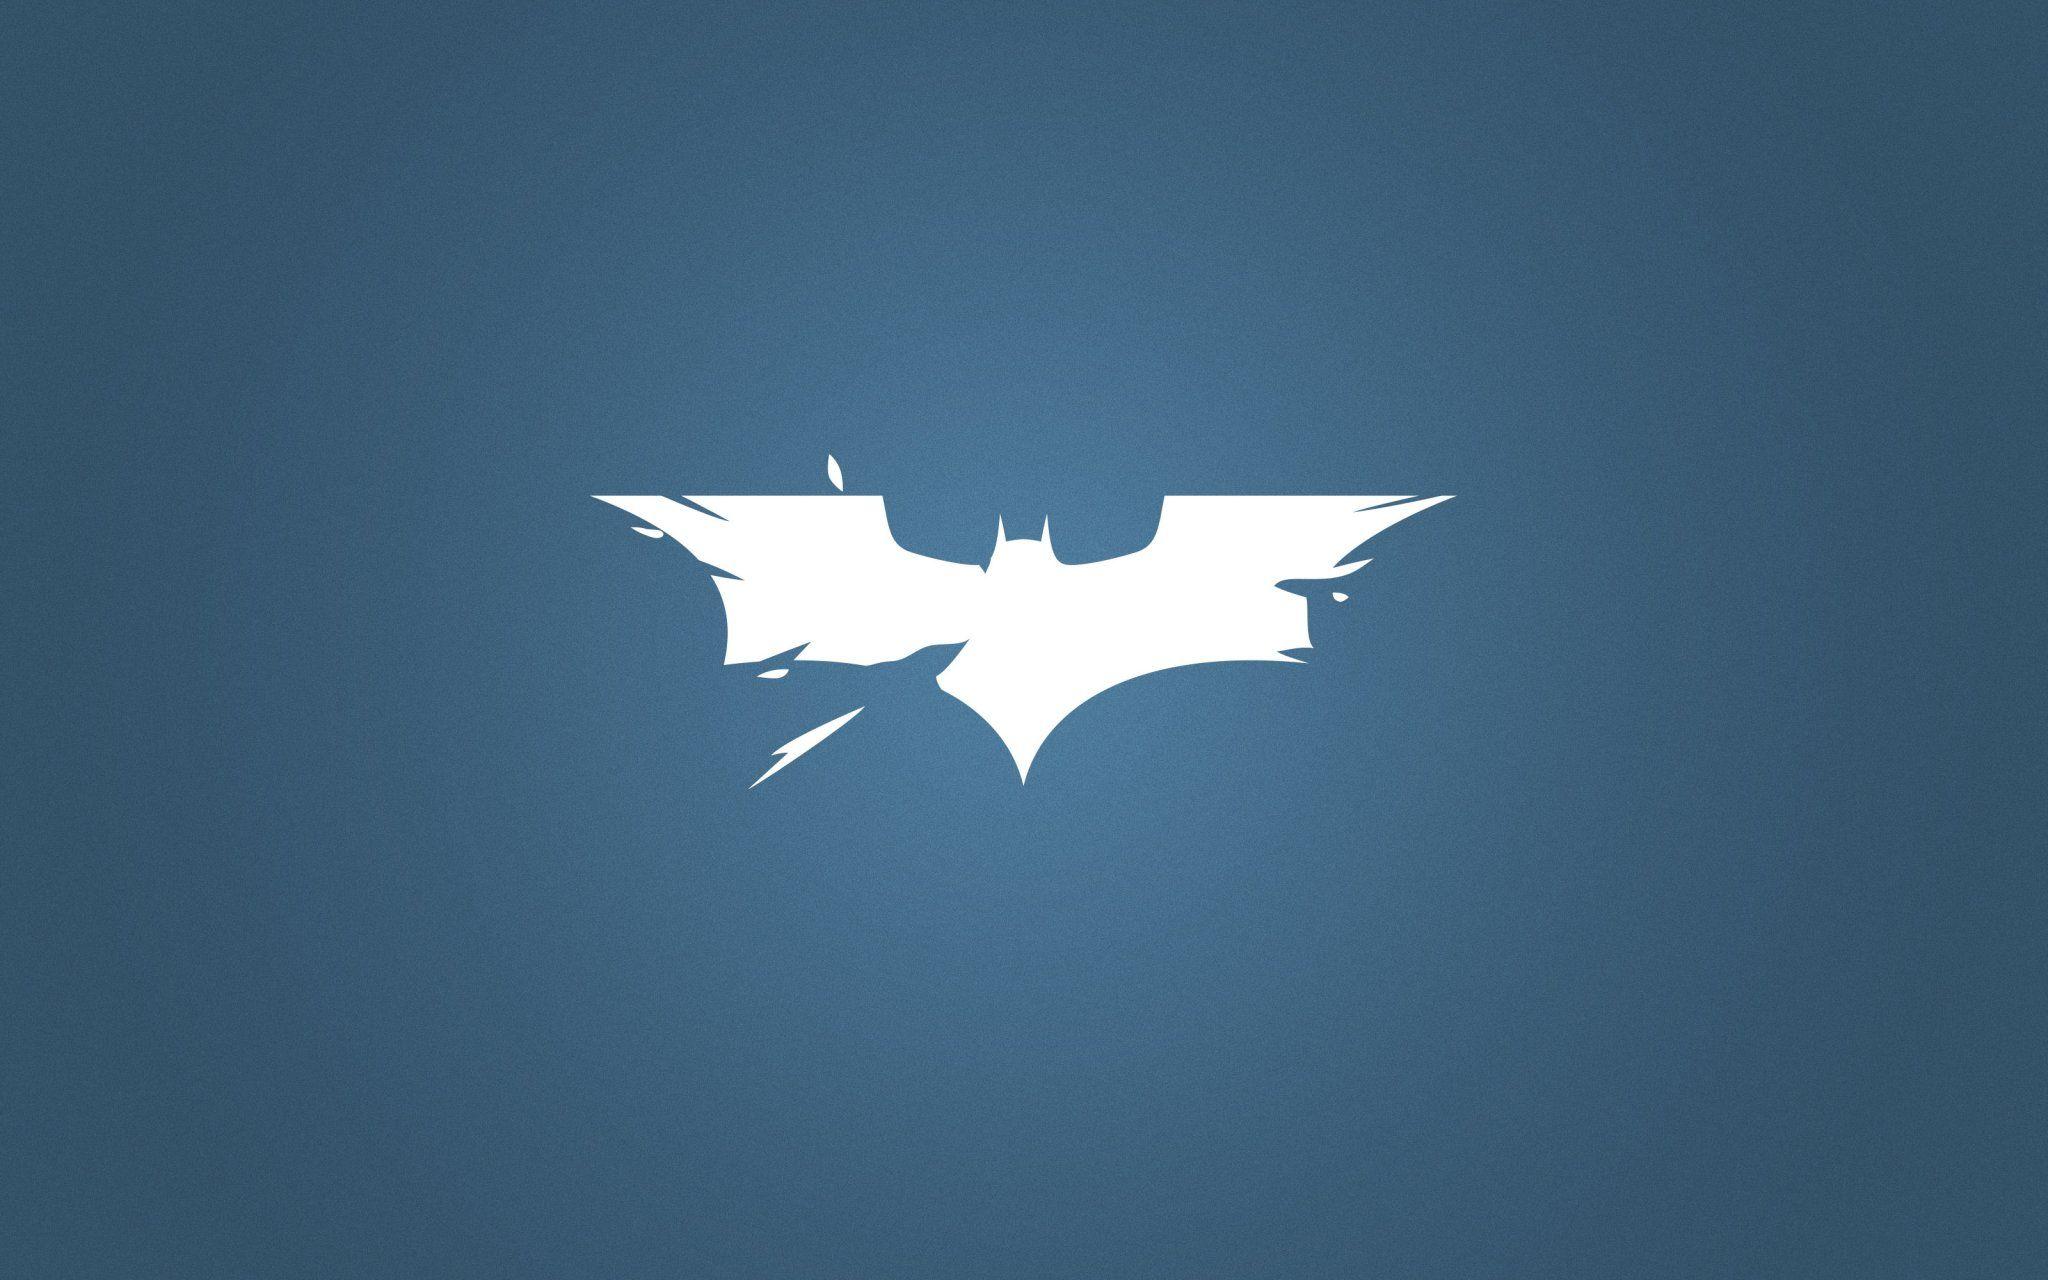 2048x1280 Hình nền biểu tượng Batman Di động là hình nền 4k - Joker Tại sao lại như vậy